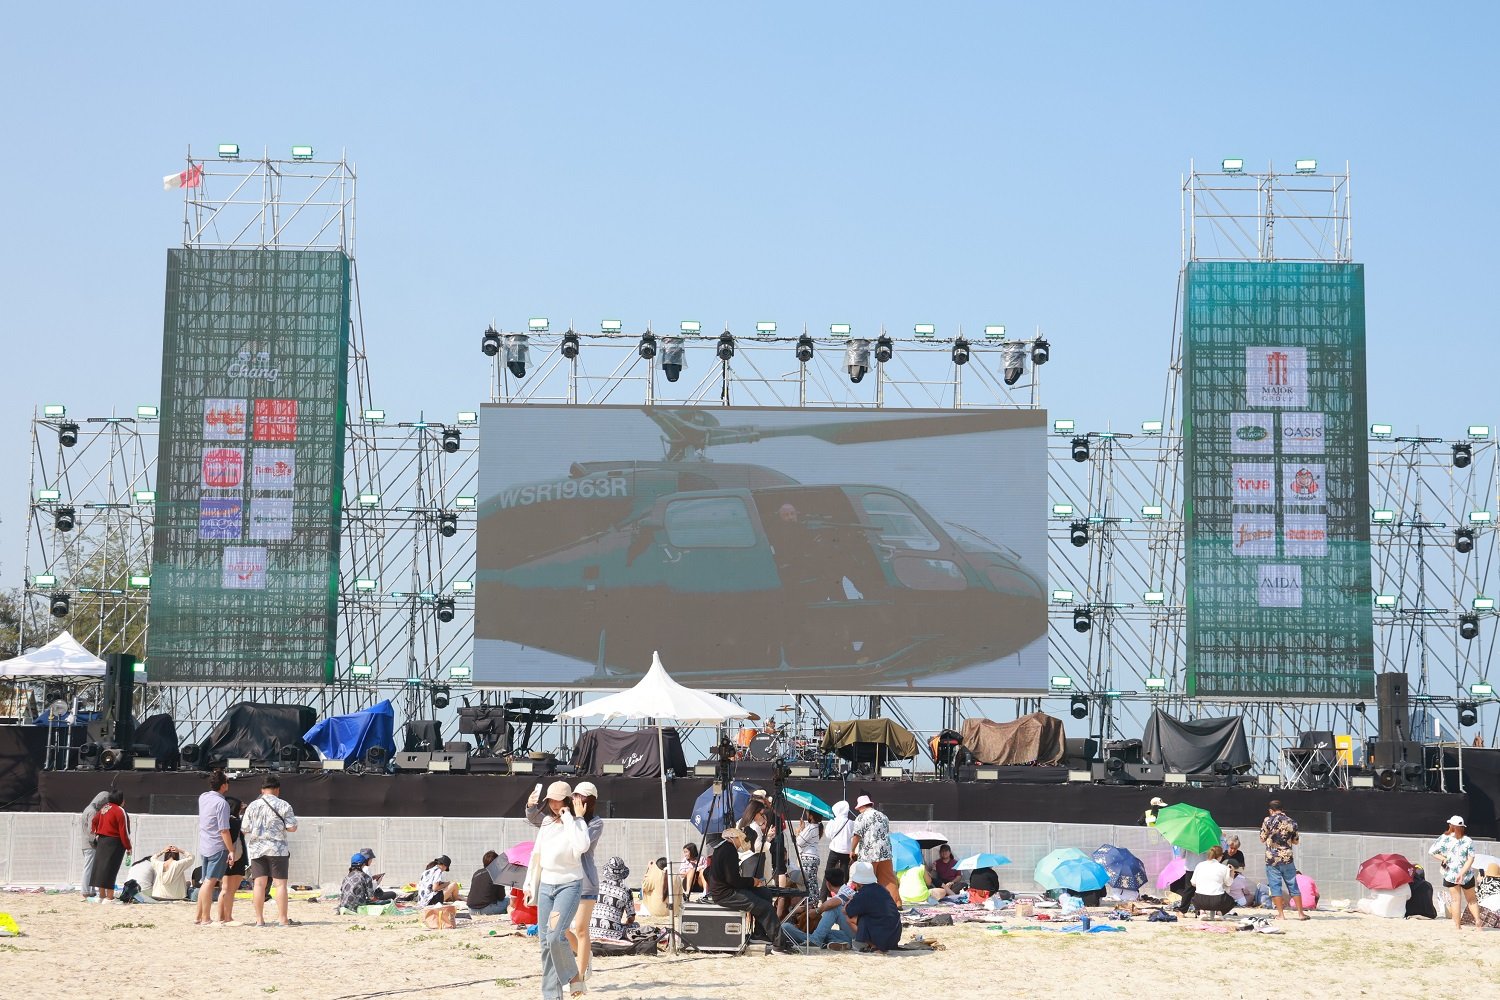  ยกก๊วนดูหนัง ยกแก๊งเต้นสุดตัว “Movie On The Beach ครั้งที่ 9” ตอน...ยกเพื่อนขึ้นบก